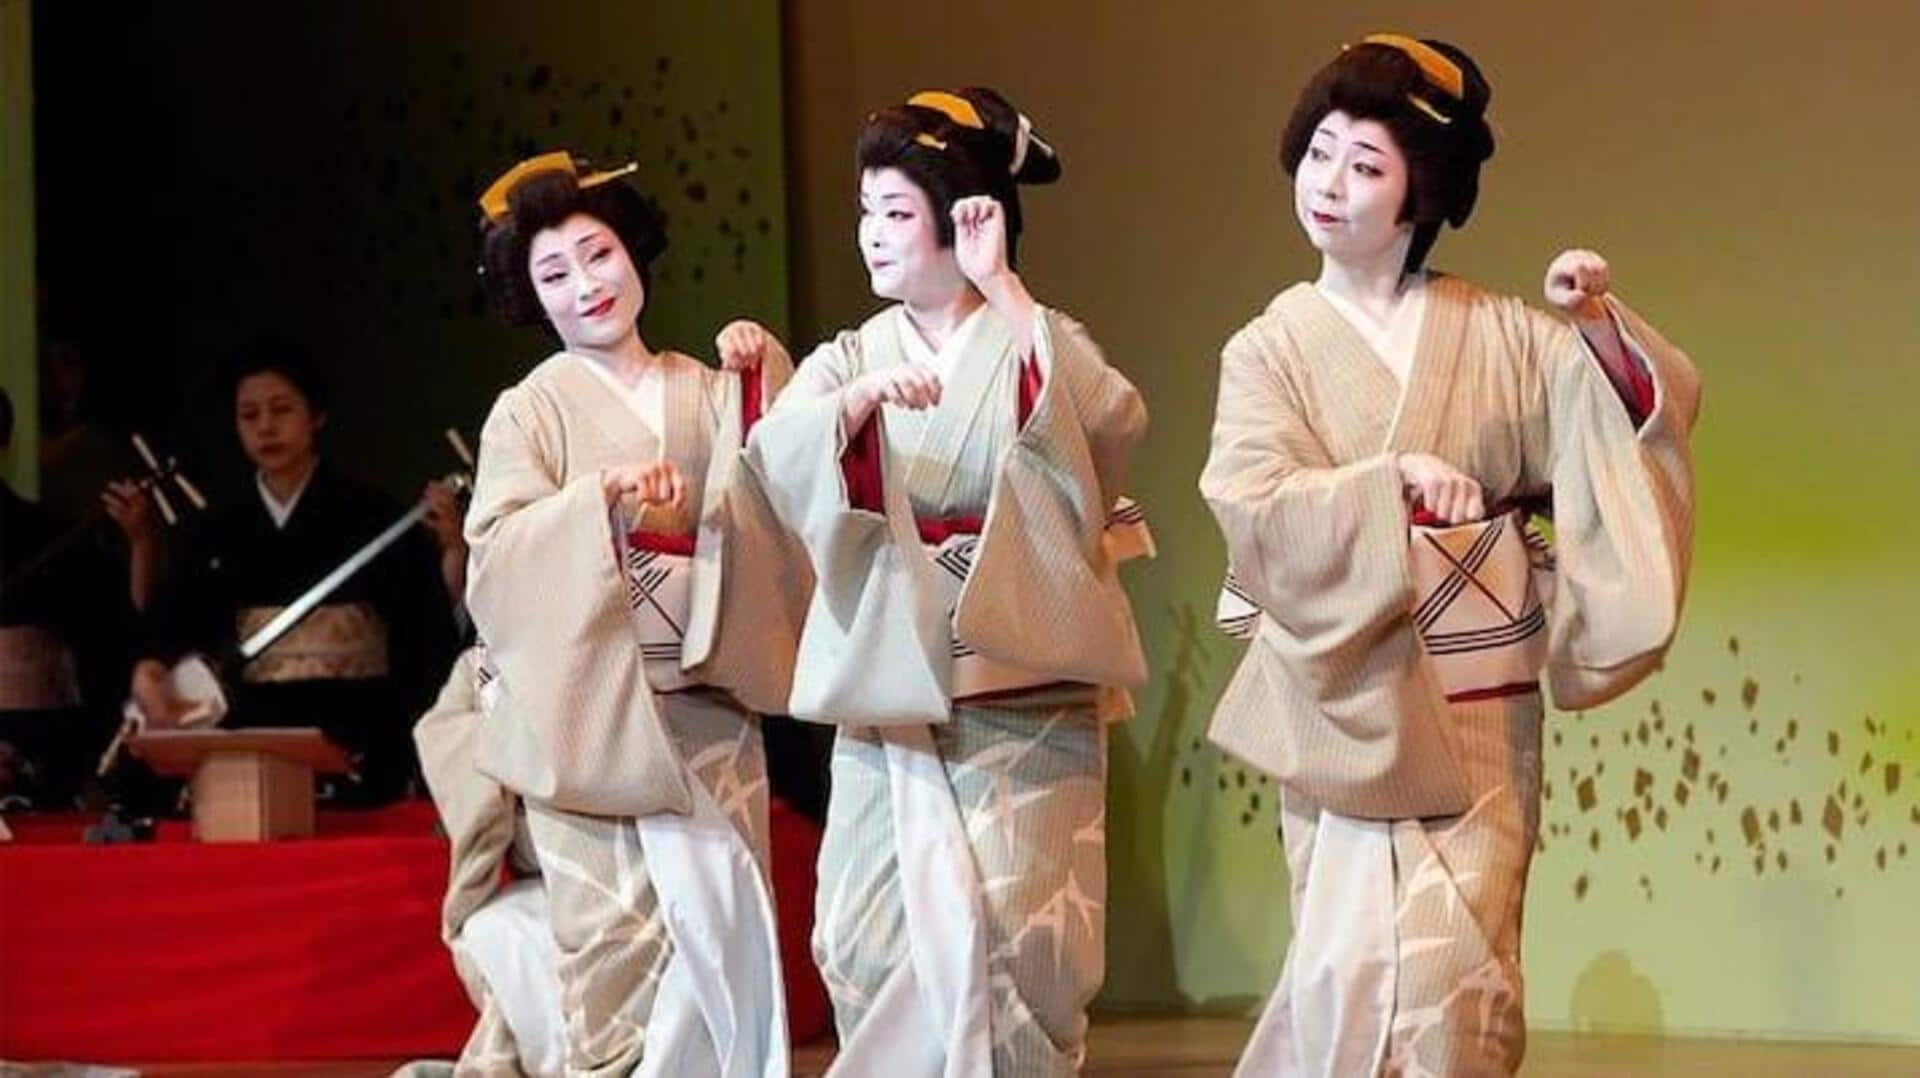 Membongkar Mitos Terkait Geisha Di Masyarakat